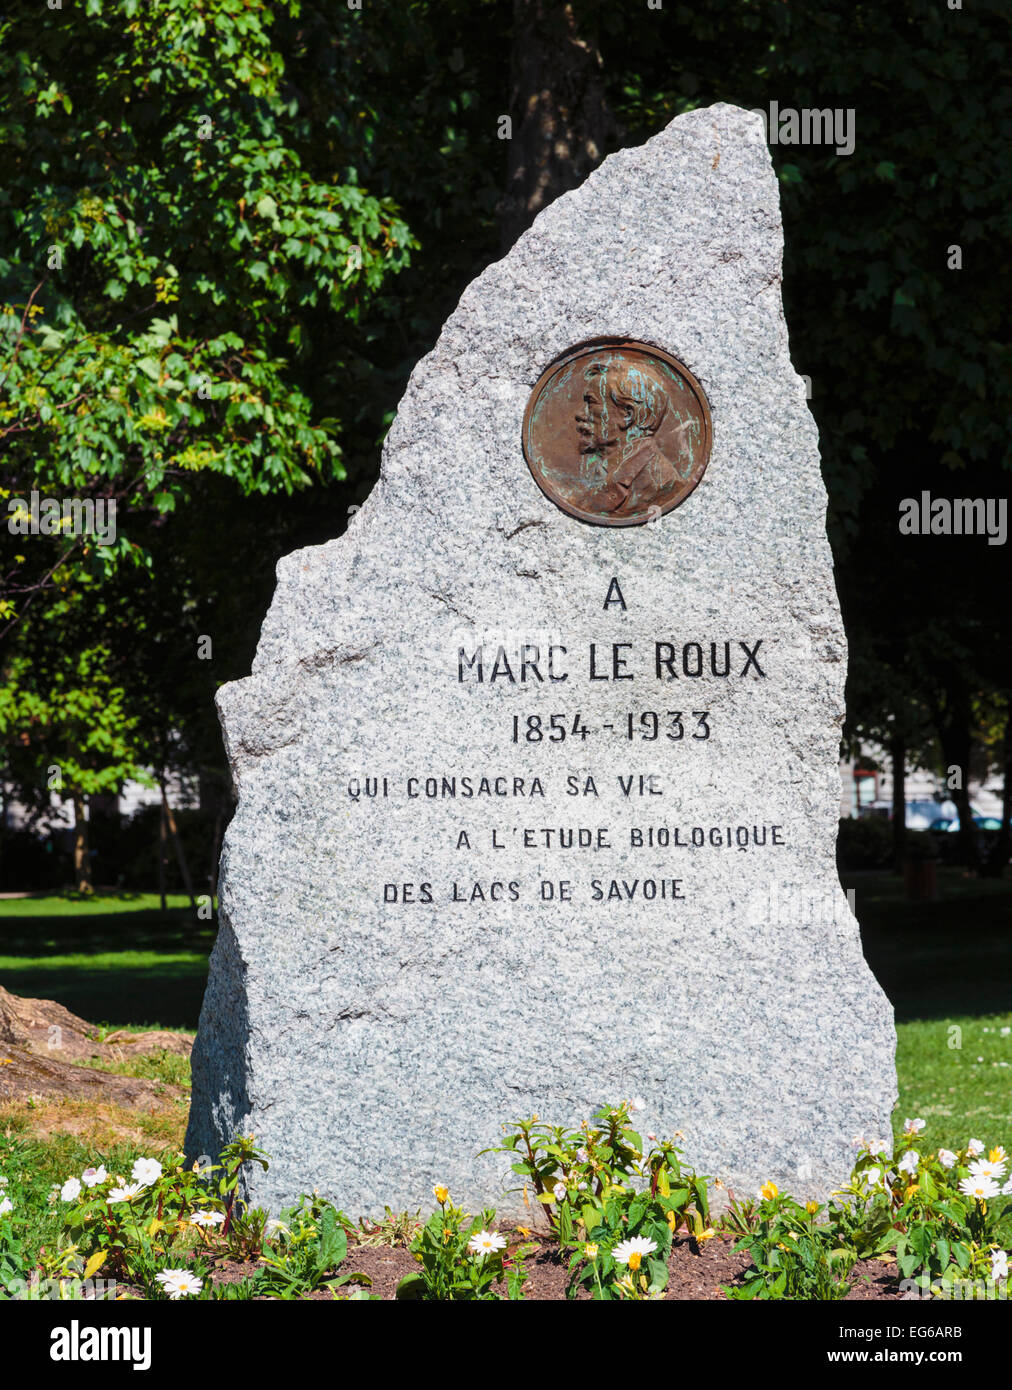 Annecy, Haute-Savoie reparto, Rhone-Alpes, Francia. Monumento a Marc le Roux, 1854 -1933, biologo. Foto Stock